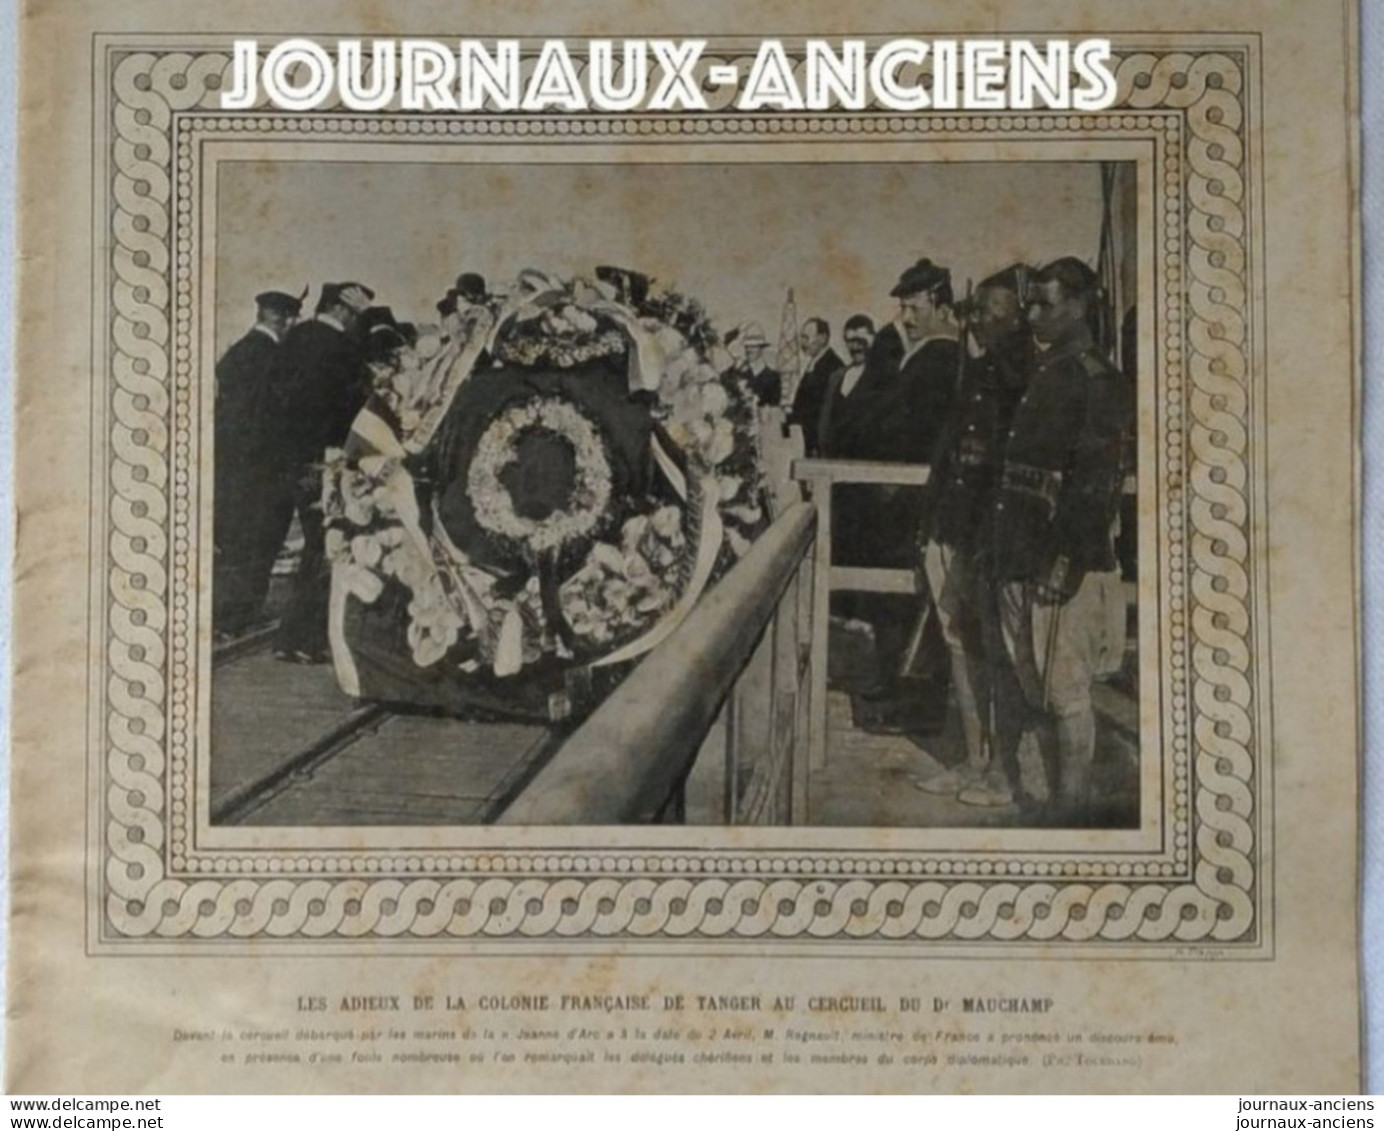 1907 MAROC - TANGER - LES ADIEUX DE LA COLONNE FRANÇAISE AU CERCUEIL DU Dr MAUCHAMP - LE MONDE ILLUSTRÉ - Newspapers - Before 1800